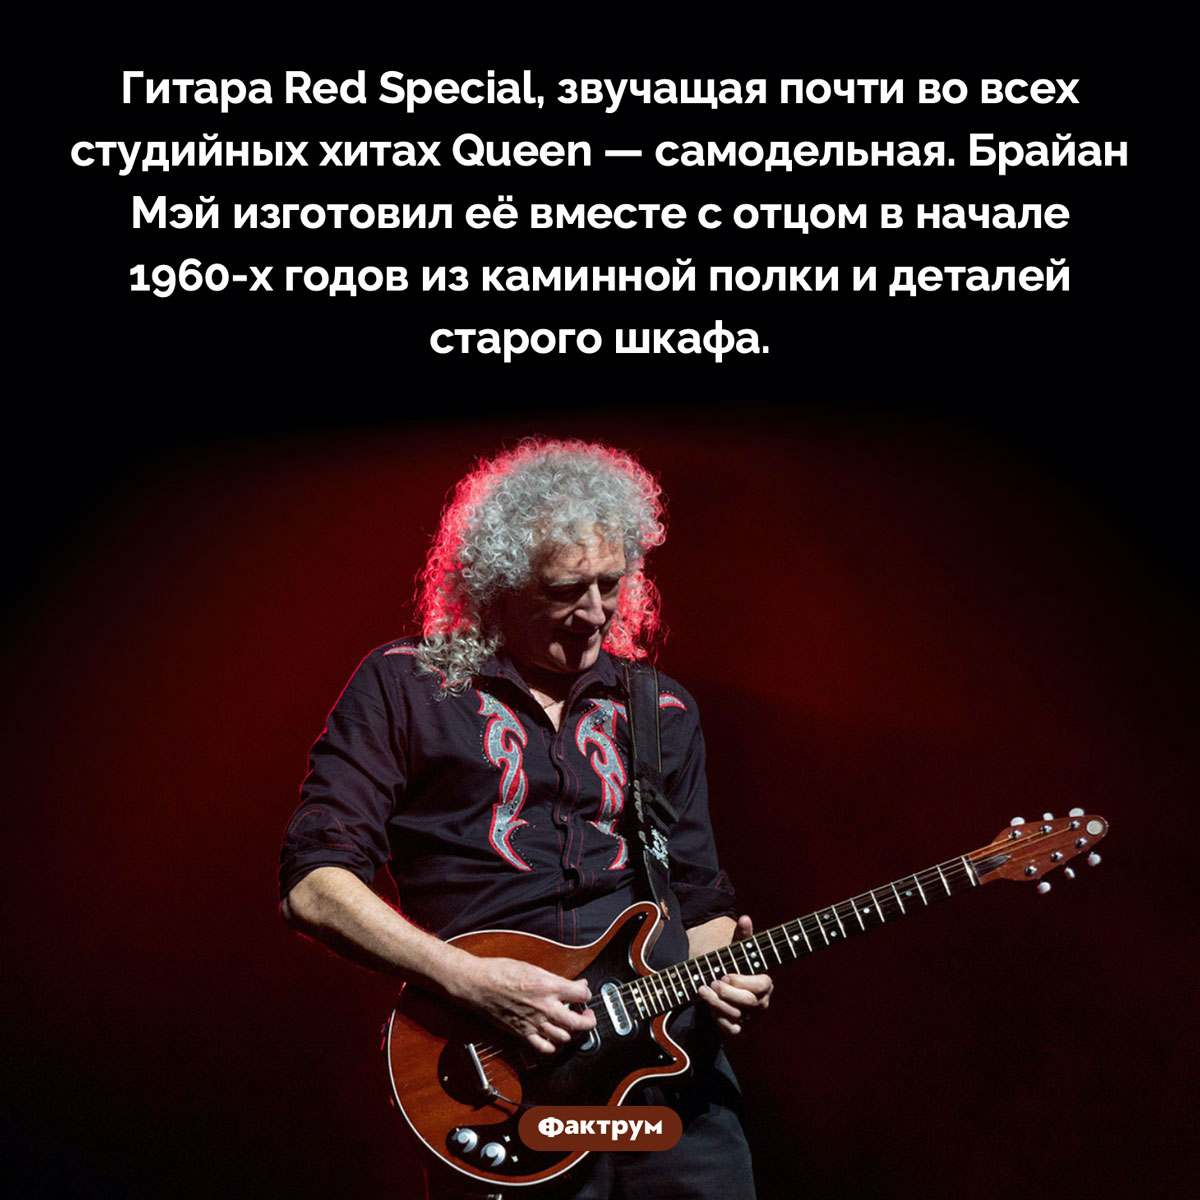 Любимая гитара Брайана Мэя. Гитара Red Special, звучащая почти во всех студийных хитах Queen — самодельная. Брайан Мэй изготовил её вместе с отцом в начале 1960-х годов из каминной полки и деталей старого шкафа.